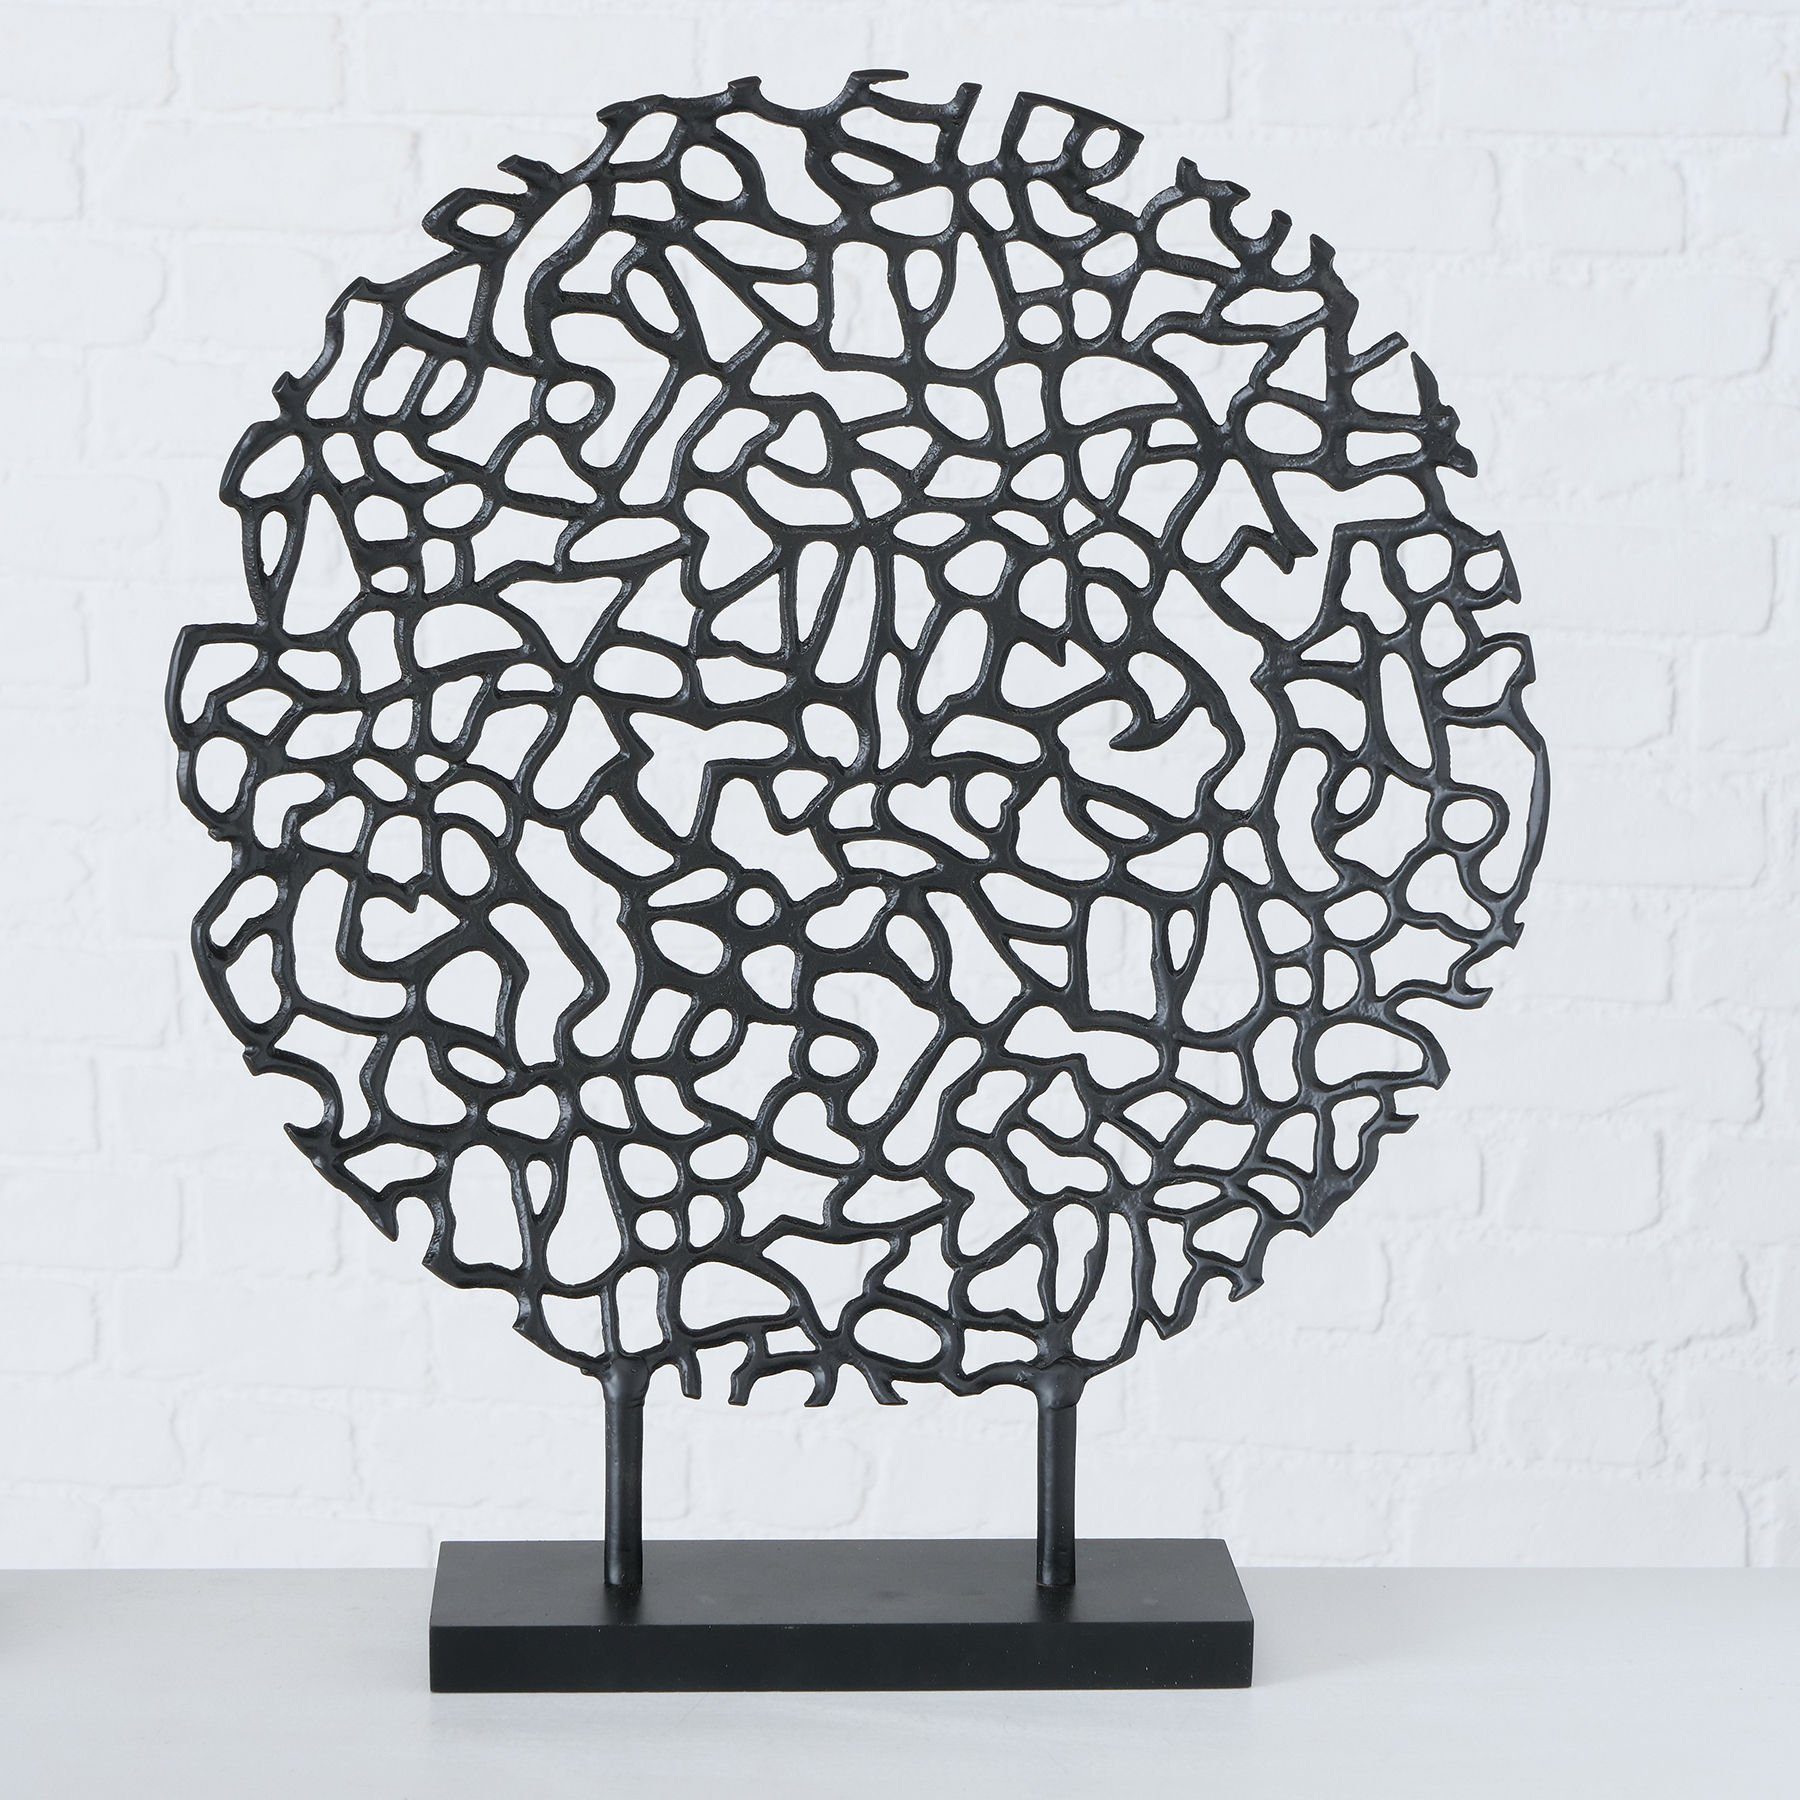 Georg Stiels Dekoobjekt aus Aluminium (1 St), Jedes Stück ein Unikat, abstrakte Form, ähnelt einer Koralle